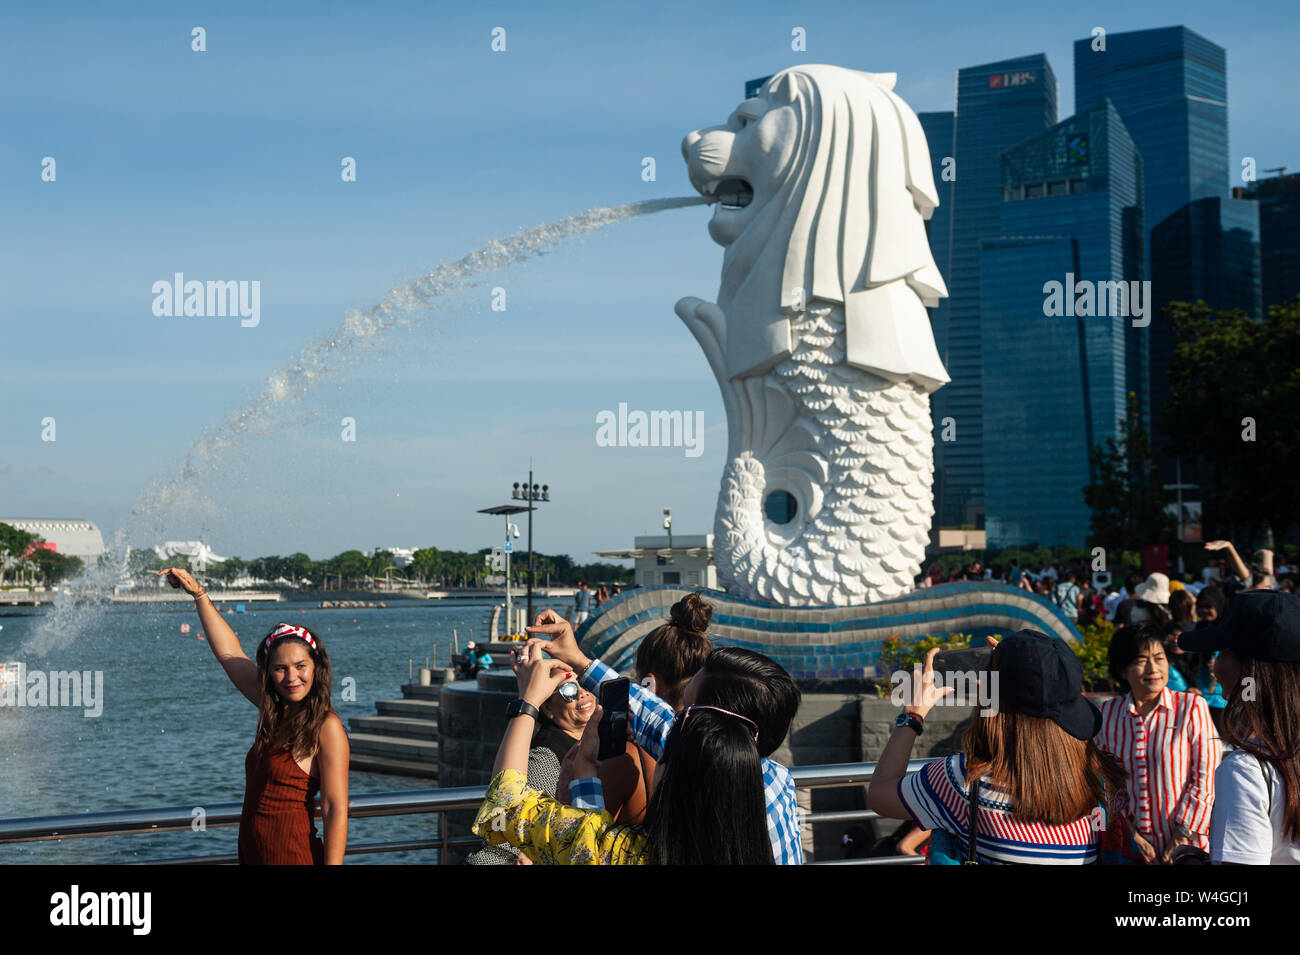 19.07.2019, Singapour, République de Singapour, en Asie - des touristes posent pour des photos dans le Parc Merlion le long de la rivière Singapour. Banque D'Images